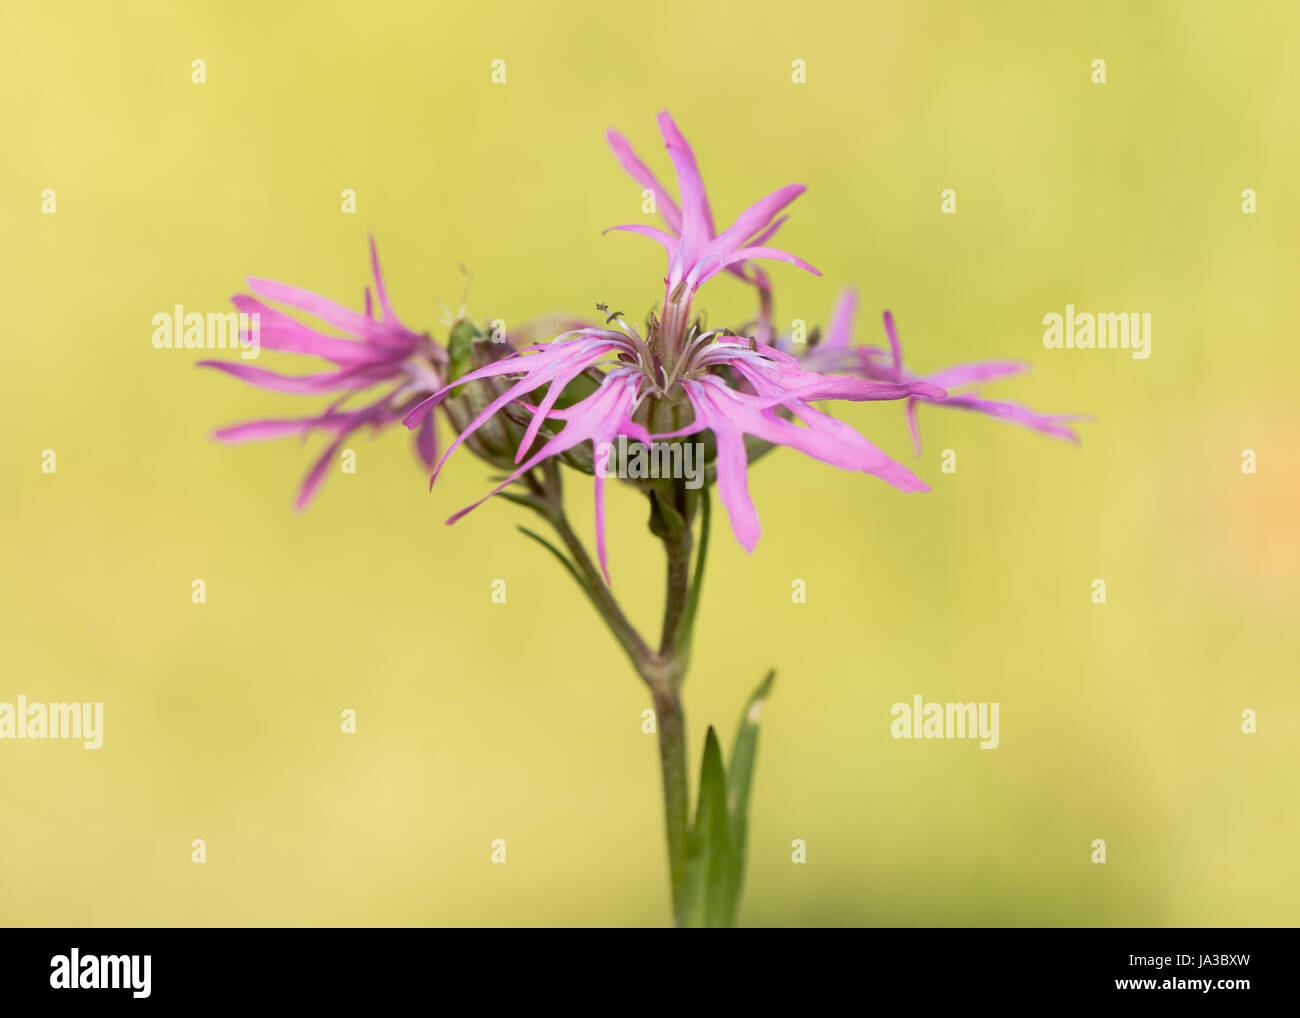 Ragged Robin (Lychnis flos-cuculi) piante in fiore. Fiori di colore rosa sulla pianta della famiglia Caryophyllaceae, con strani petali incompleta Foto Stock